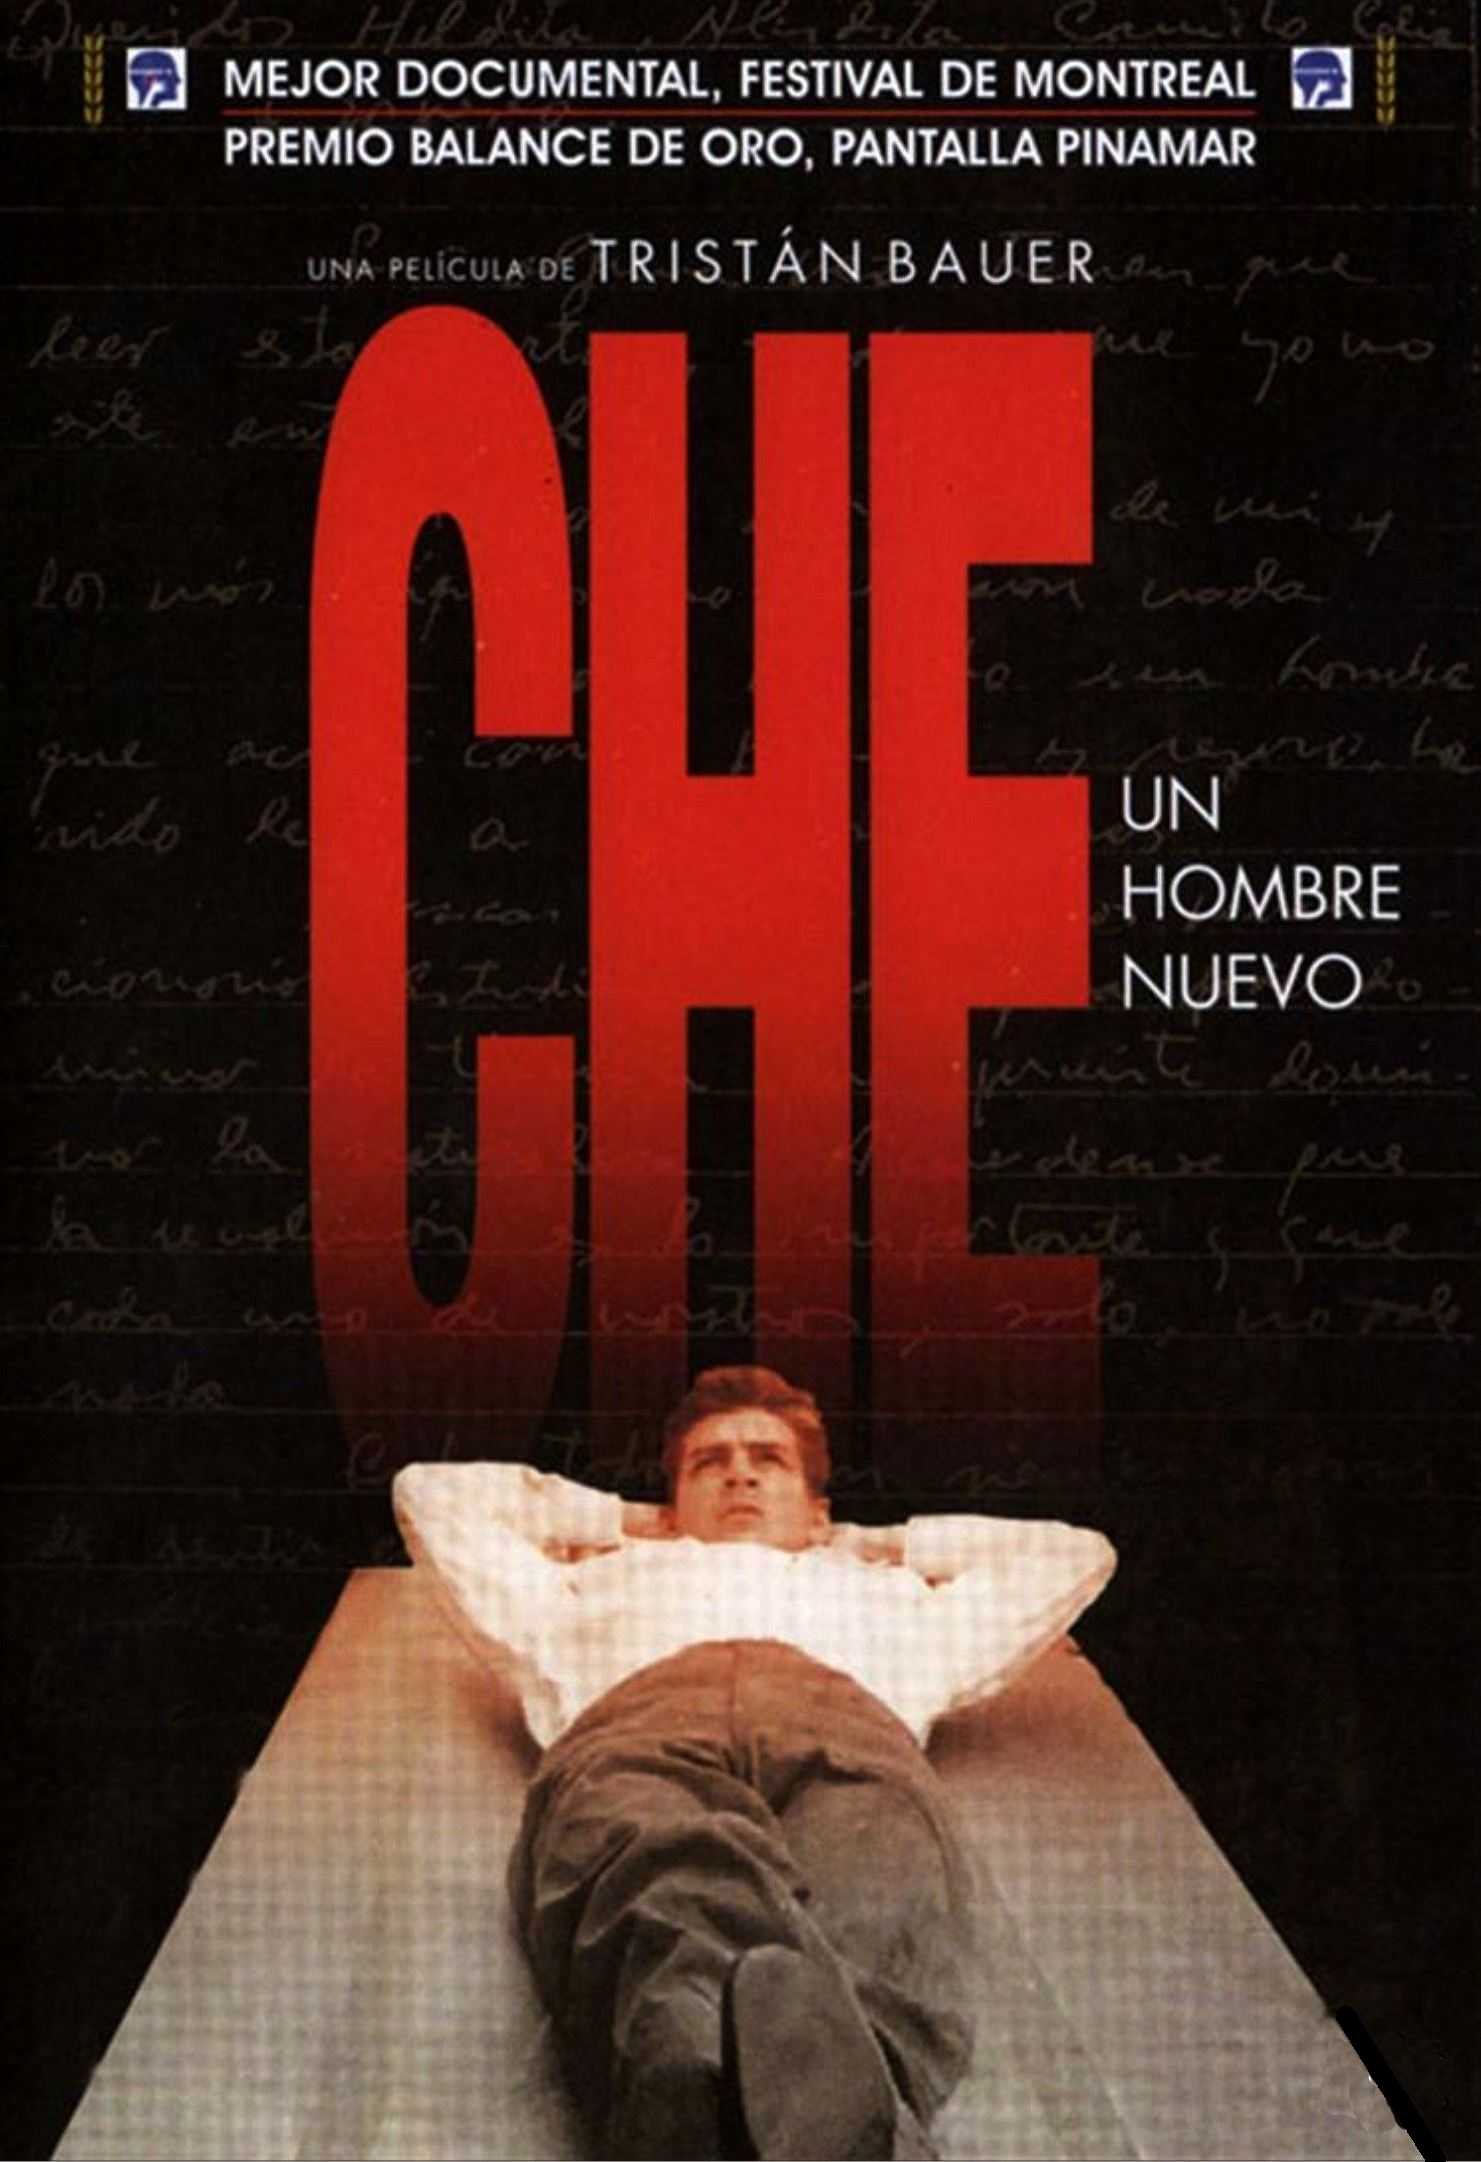 Che – Un hombre nuevo [Sub-ITA] in streaming